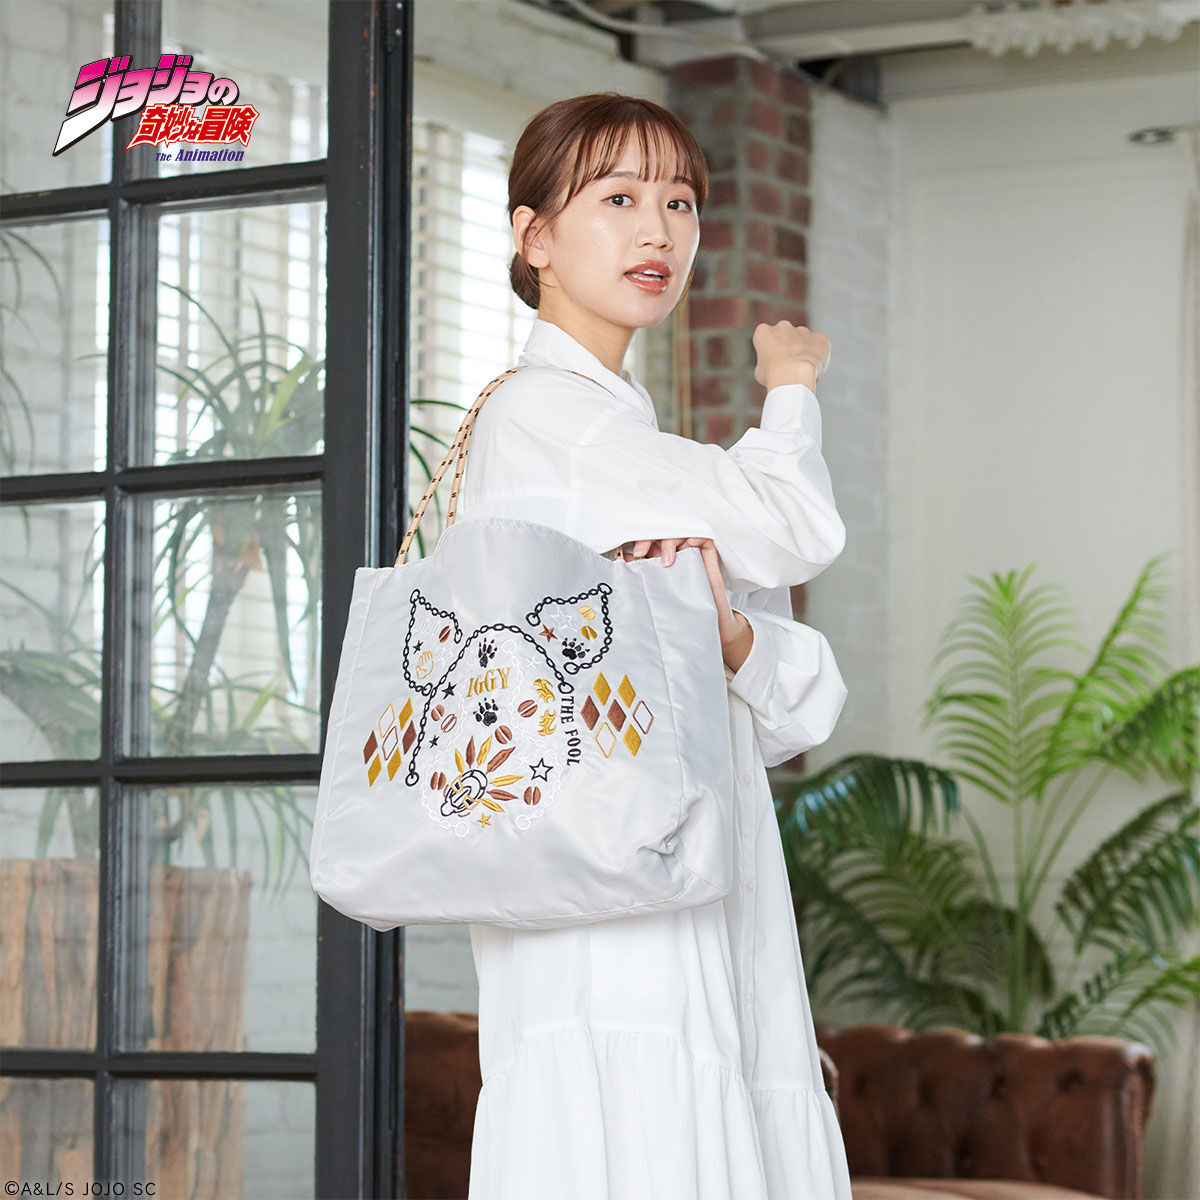 7,200円オノフィーフリー × ジョジョ イギー 刺繍バッグ